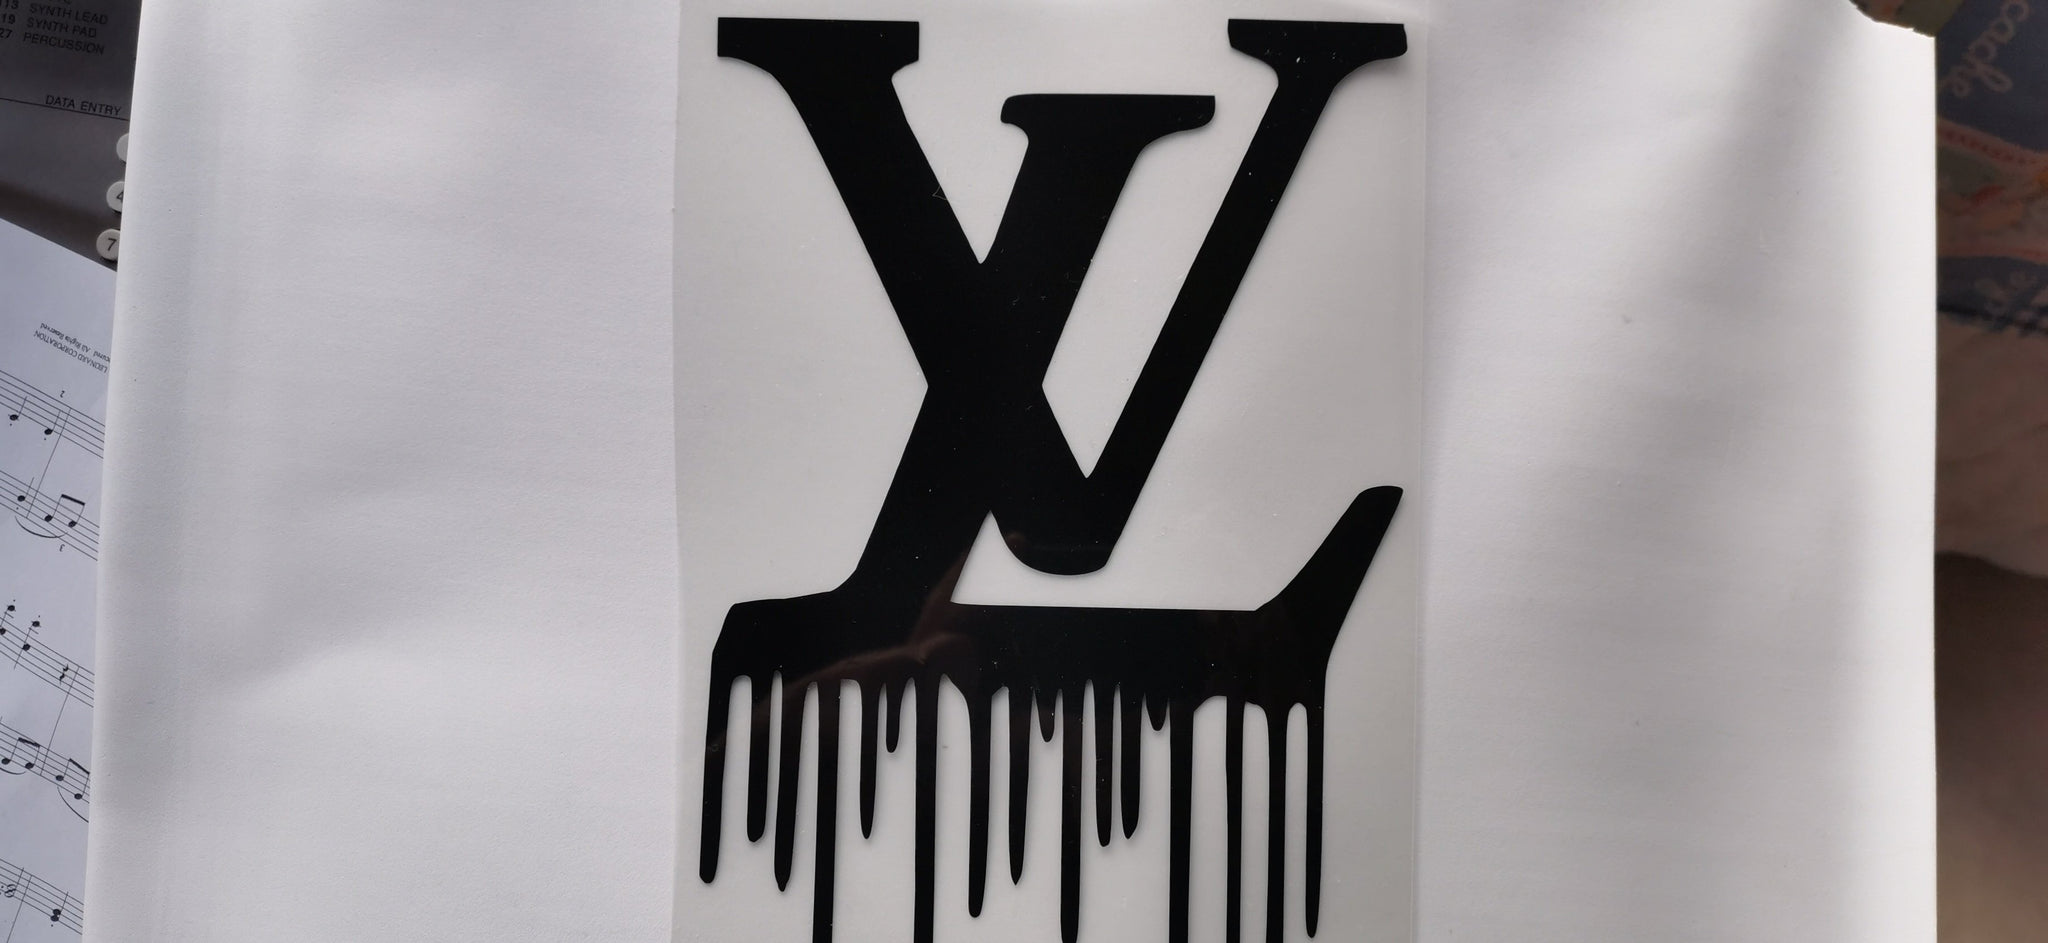 Louis Vuitton Dripping Logo Iron On Heat Transfer Vinyl HTV